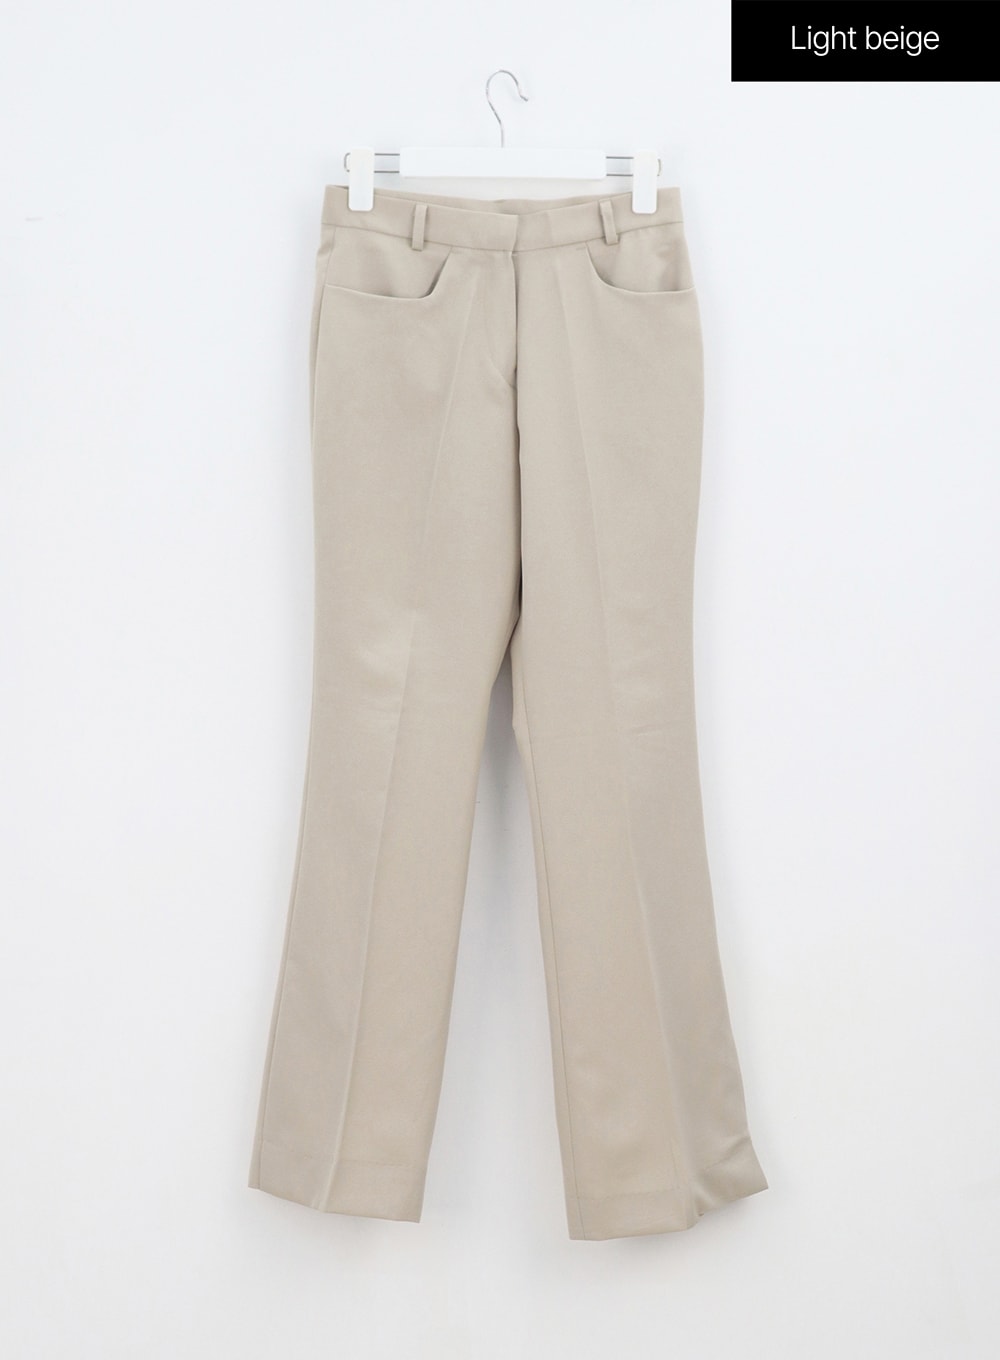 Tailored Bootcut Pants OA313